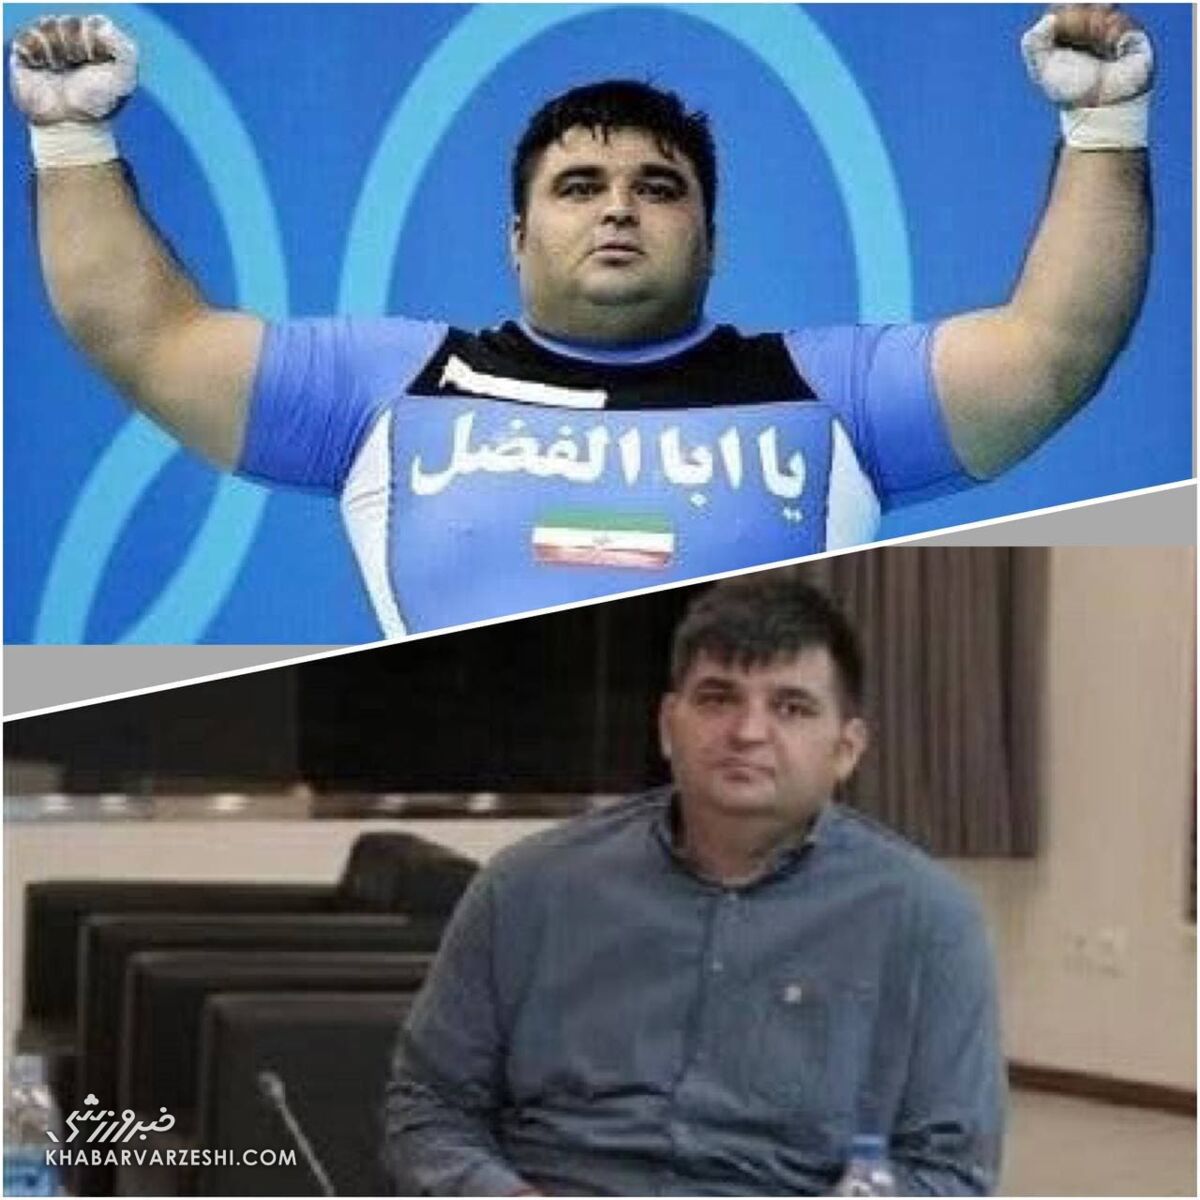 تصویری از کاهش وزن باورنکردنی هرکول ایرانی/ حسین رضازاده را ببینید نمی شناسید!